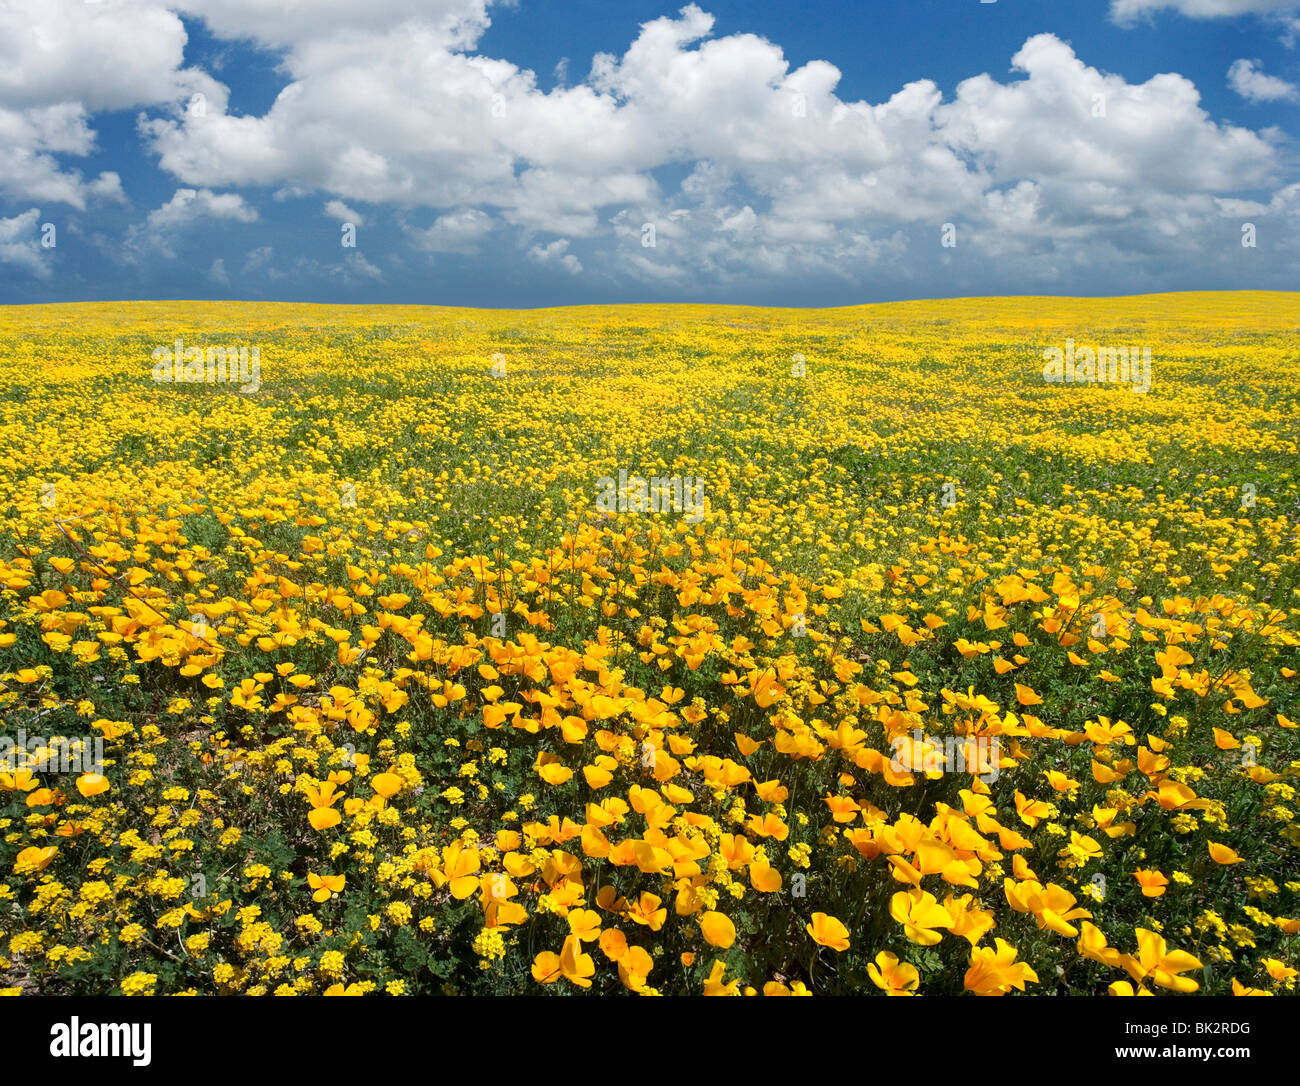 Un gran campo de naranja y amarillo, las amapolas y flores silvestres que continúa indefinidamente. El fotógrafo se fusionaron dos fotos y retouche Foto de stock